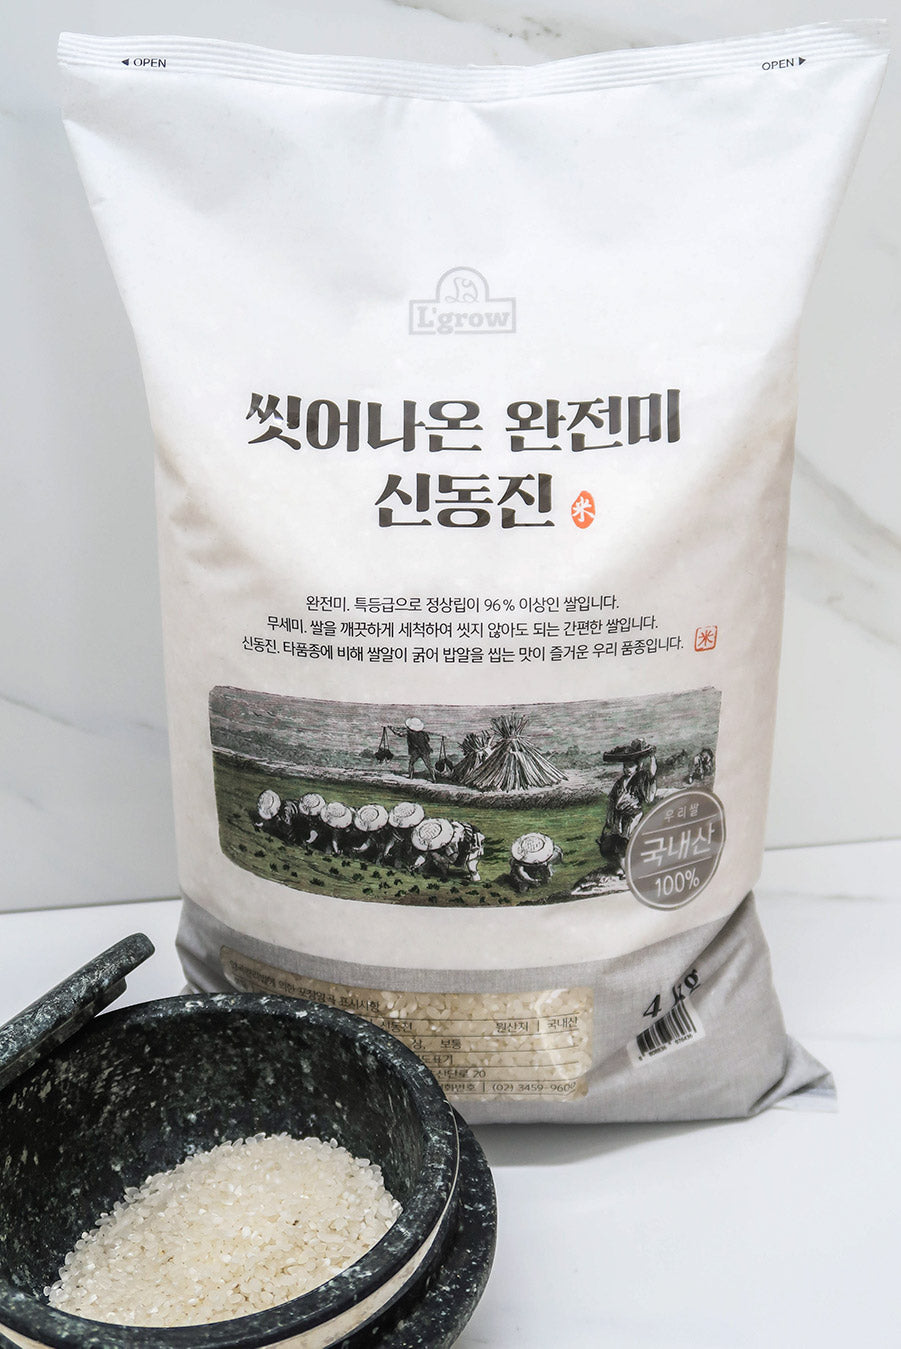 white rice bag